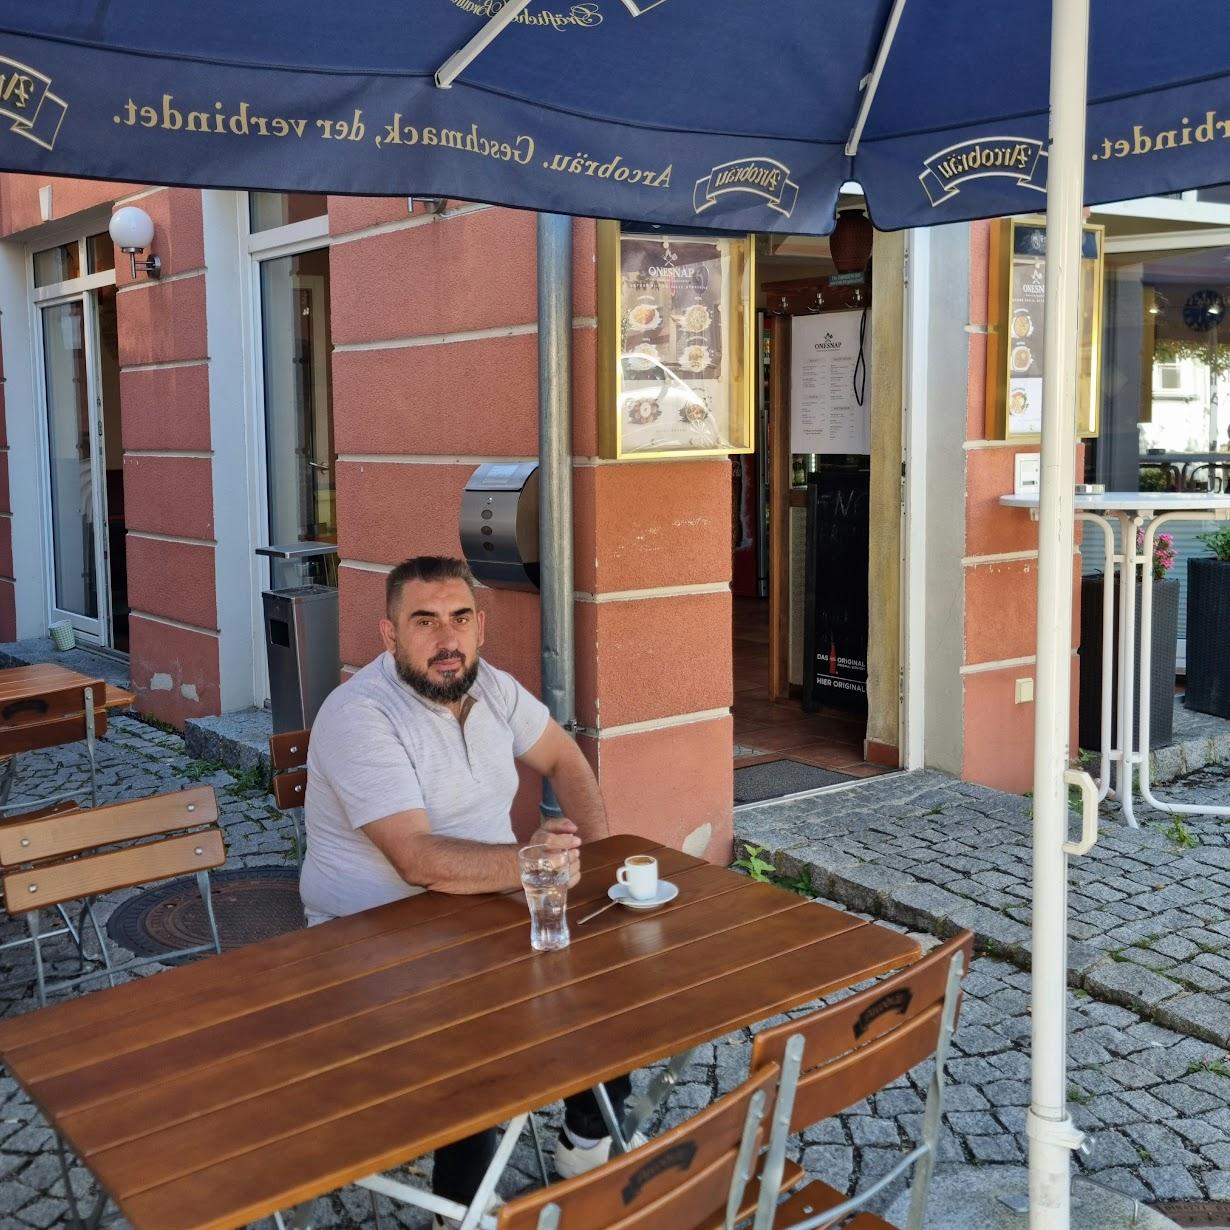 Restaurant "OneSnap Kosovarische Spezialitäten" in Straubing